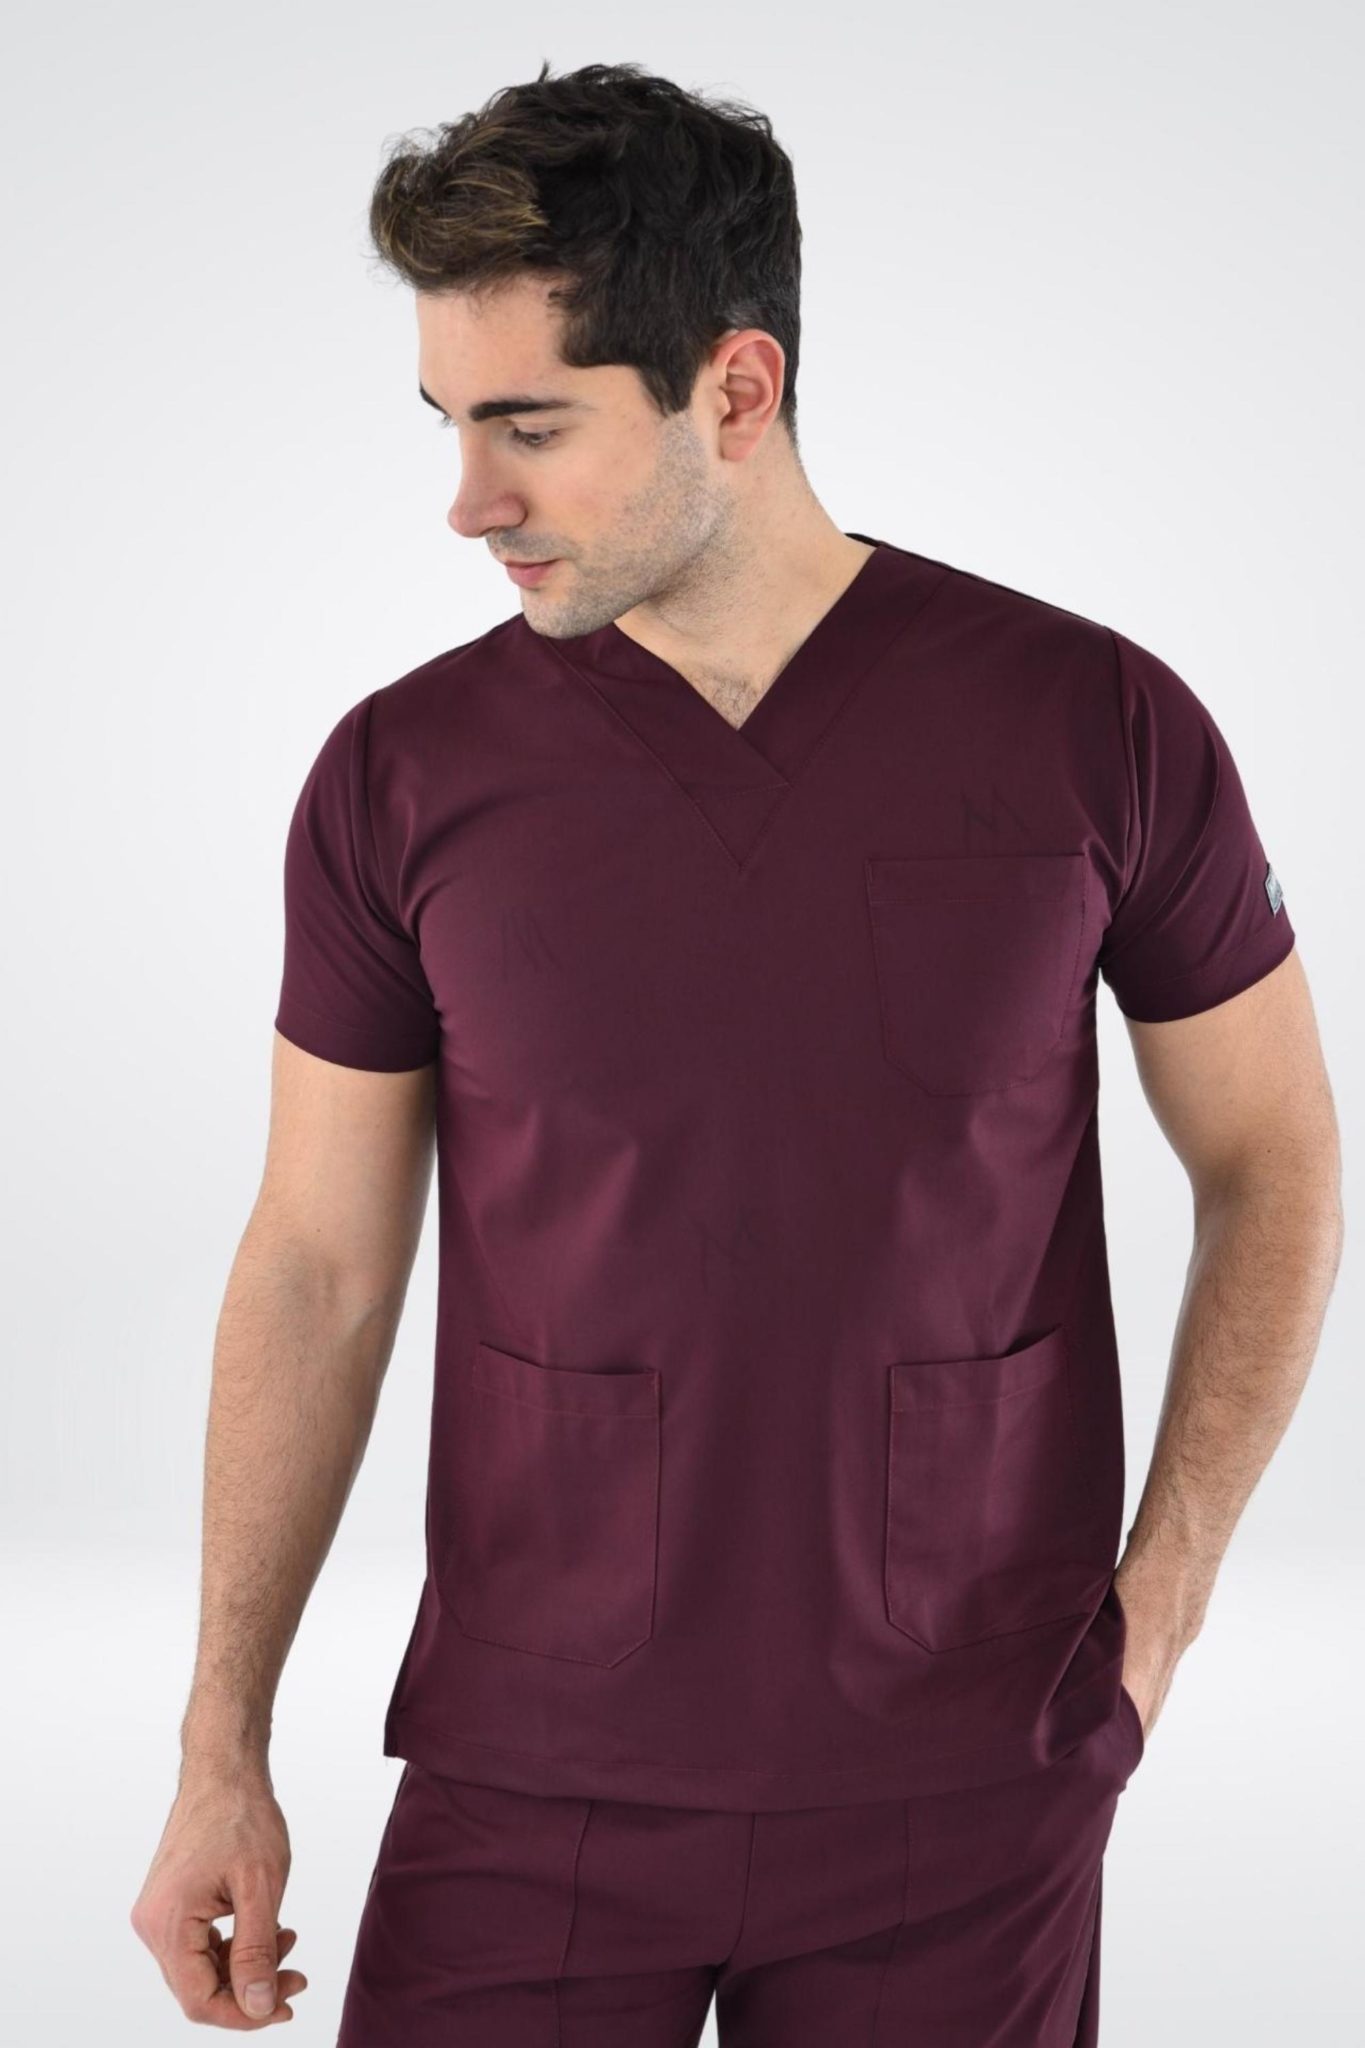 Homme portant une blouse de l’uniforme médical Tenue médicale - Bordeaux, Confort